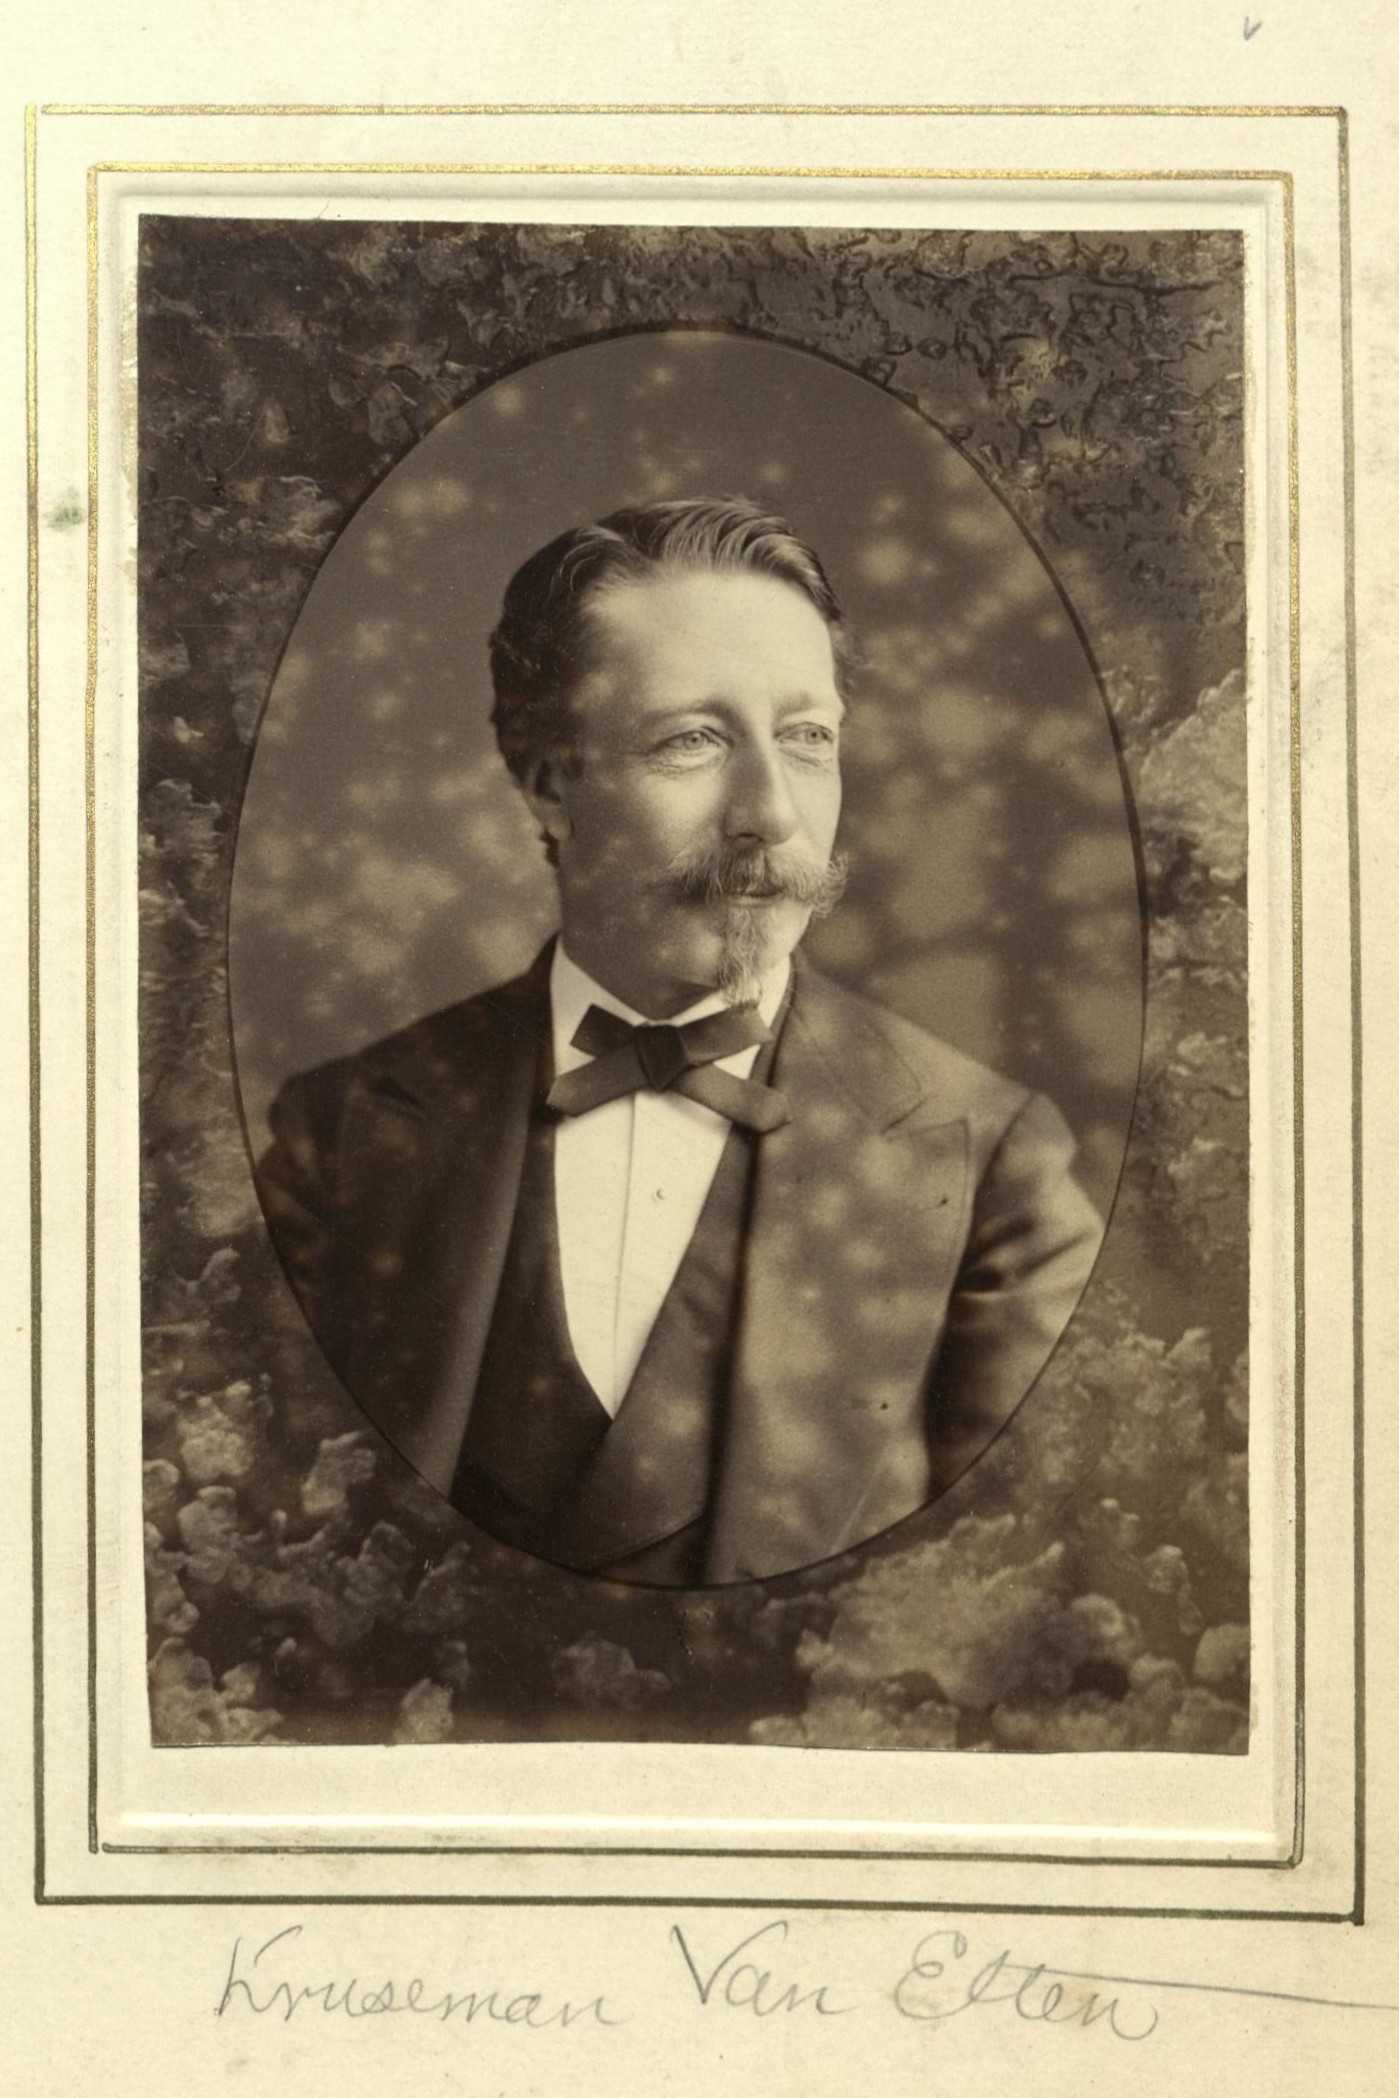 Member portrait of Kruseman van Elten